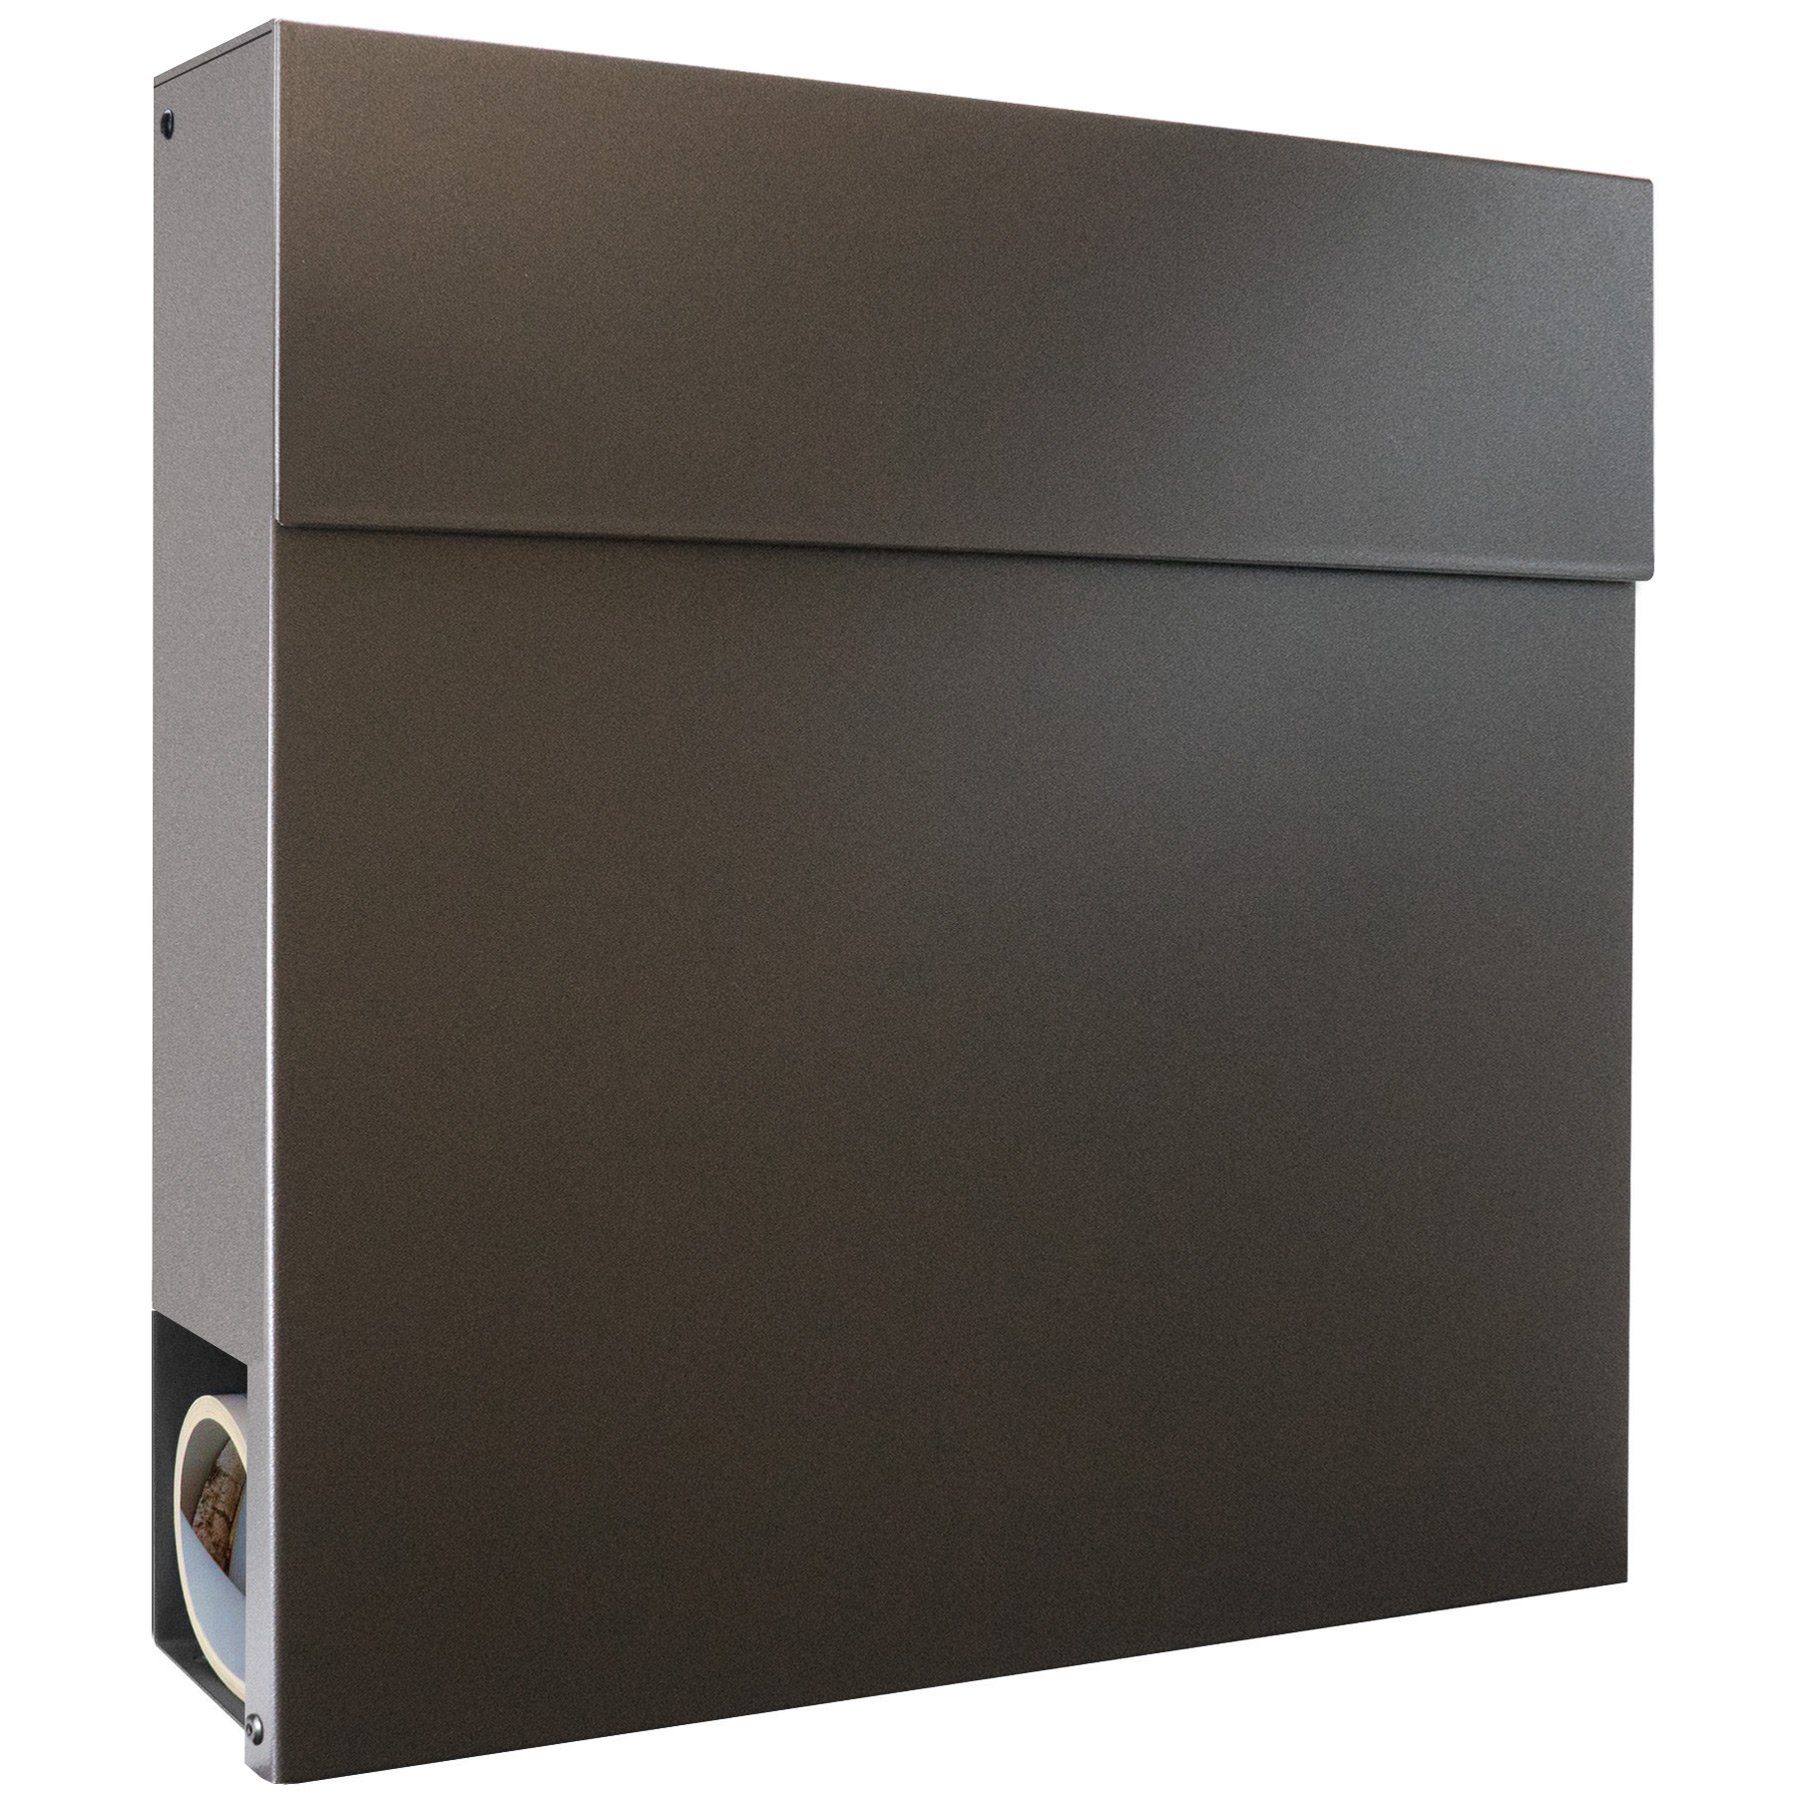 MOCAVI Briefkasten »MOCAVI Box 530 Design-Briefkasten  anthrazit-eisenglimmer (DB 703)«, integriert, passender Verschluss  (zusätzlich bestellbar) für Wetterseite, beidseitig nutzbar: Vers5 703  online kaufen | OTTO